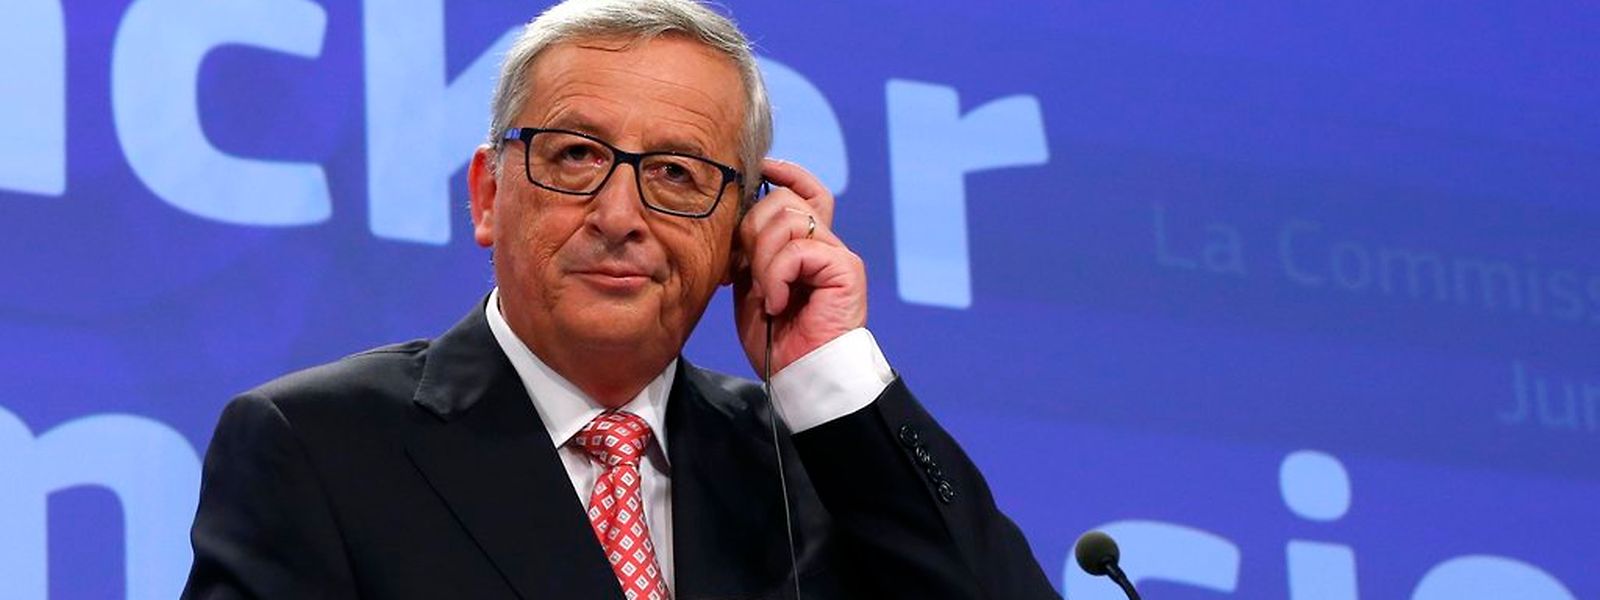 Die Juncker-Kommission muss sich auf starken Widerstand der Mitgliedsstaaten gefasst machen.